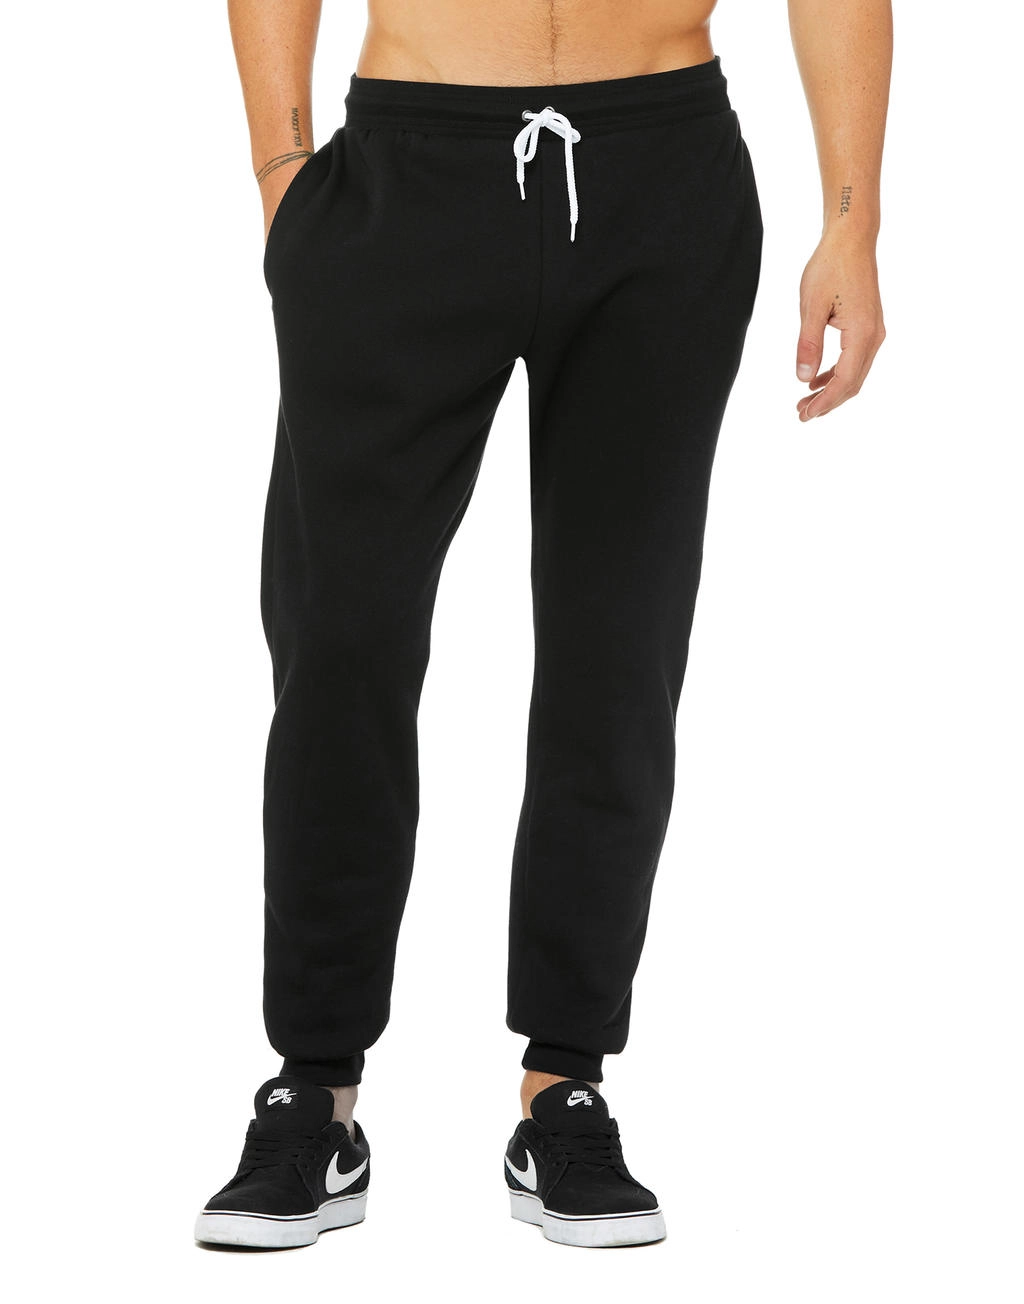 Unisex Jogger Sweatpants zum Besticken und Bedrucken in der Farbe Black mit Ihren Logo, Schriftzug oder Motiv.